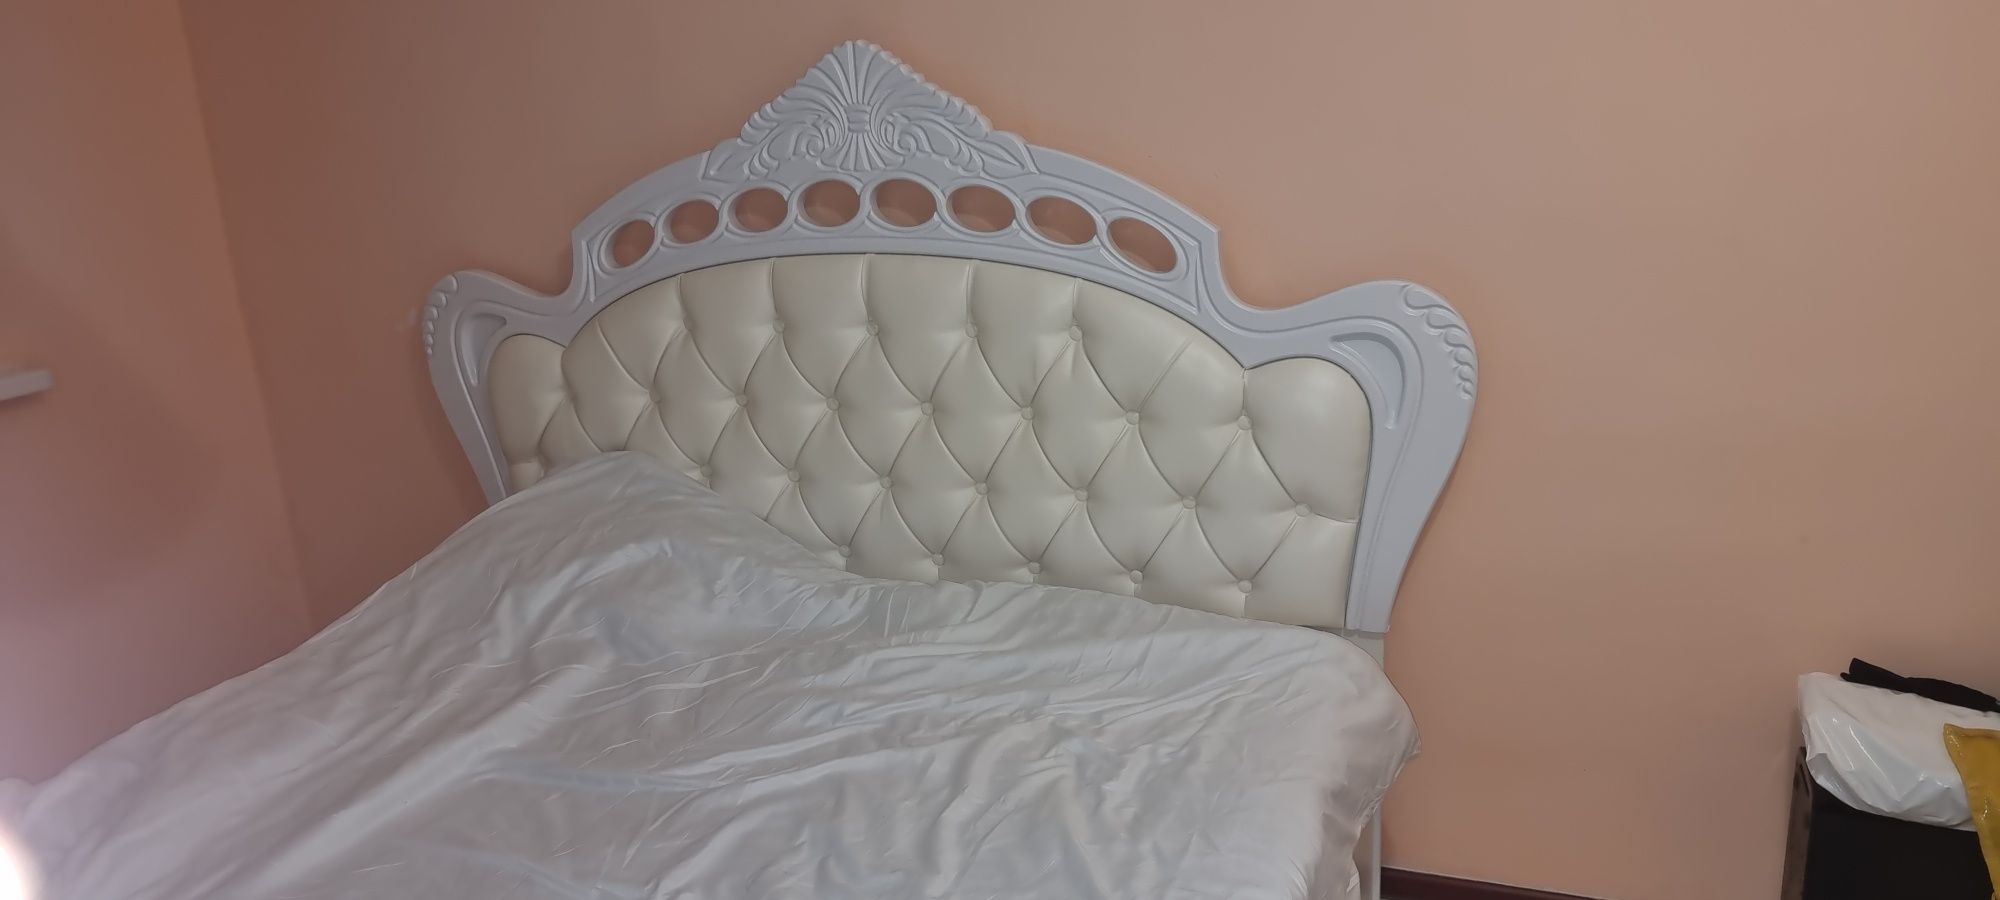 Продается двух спальный кровать с матрасом.разм 180×200 в отличном сос